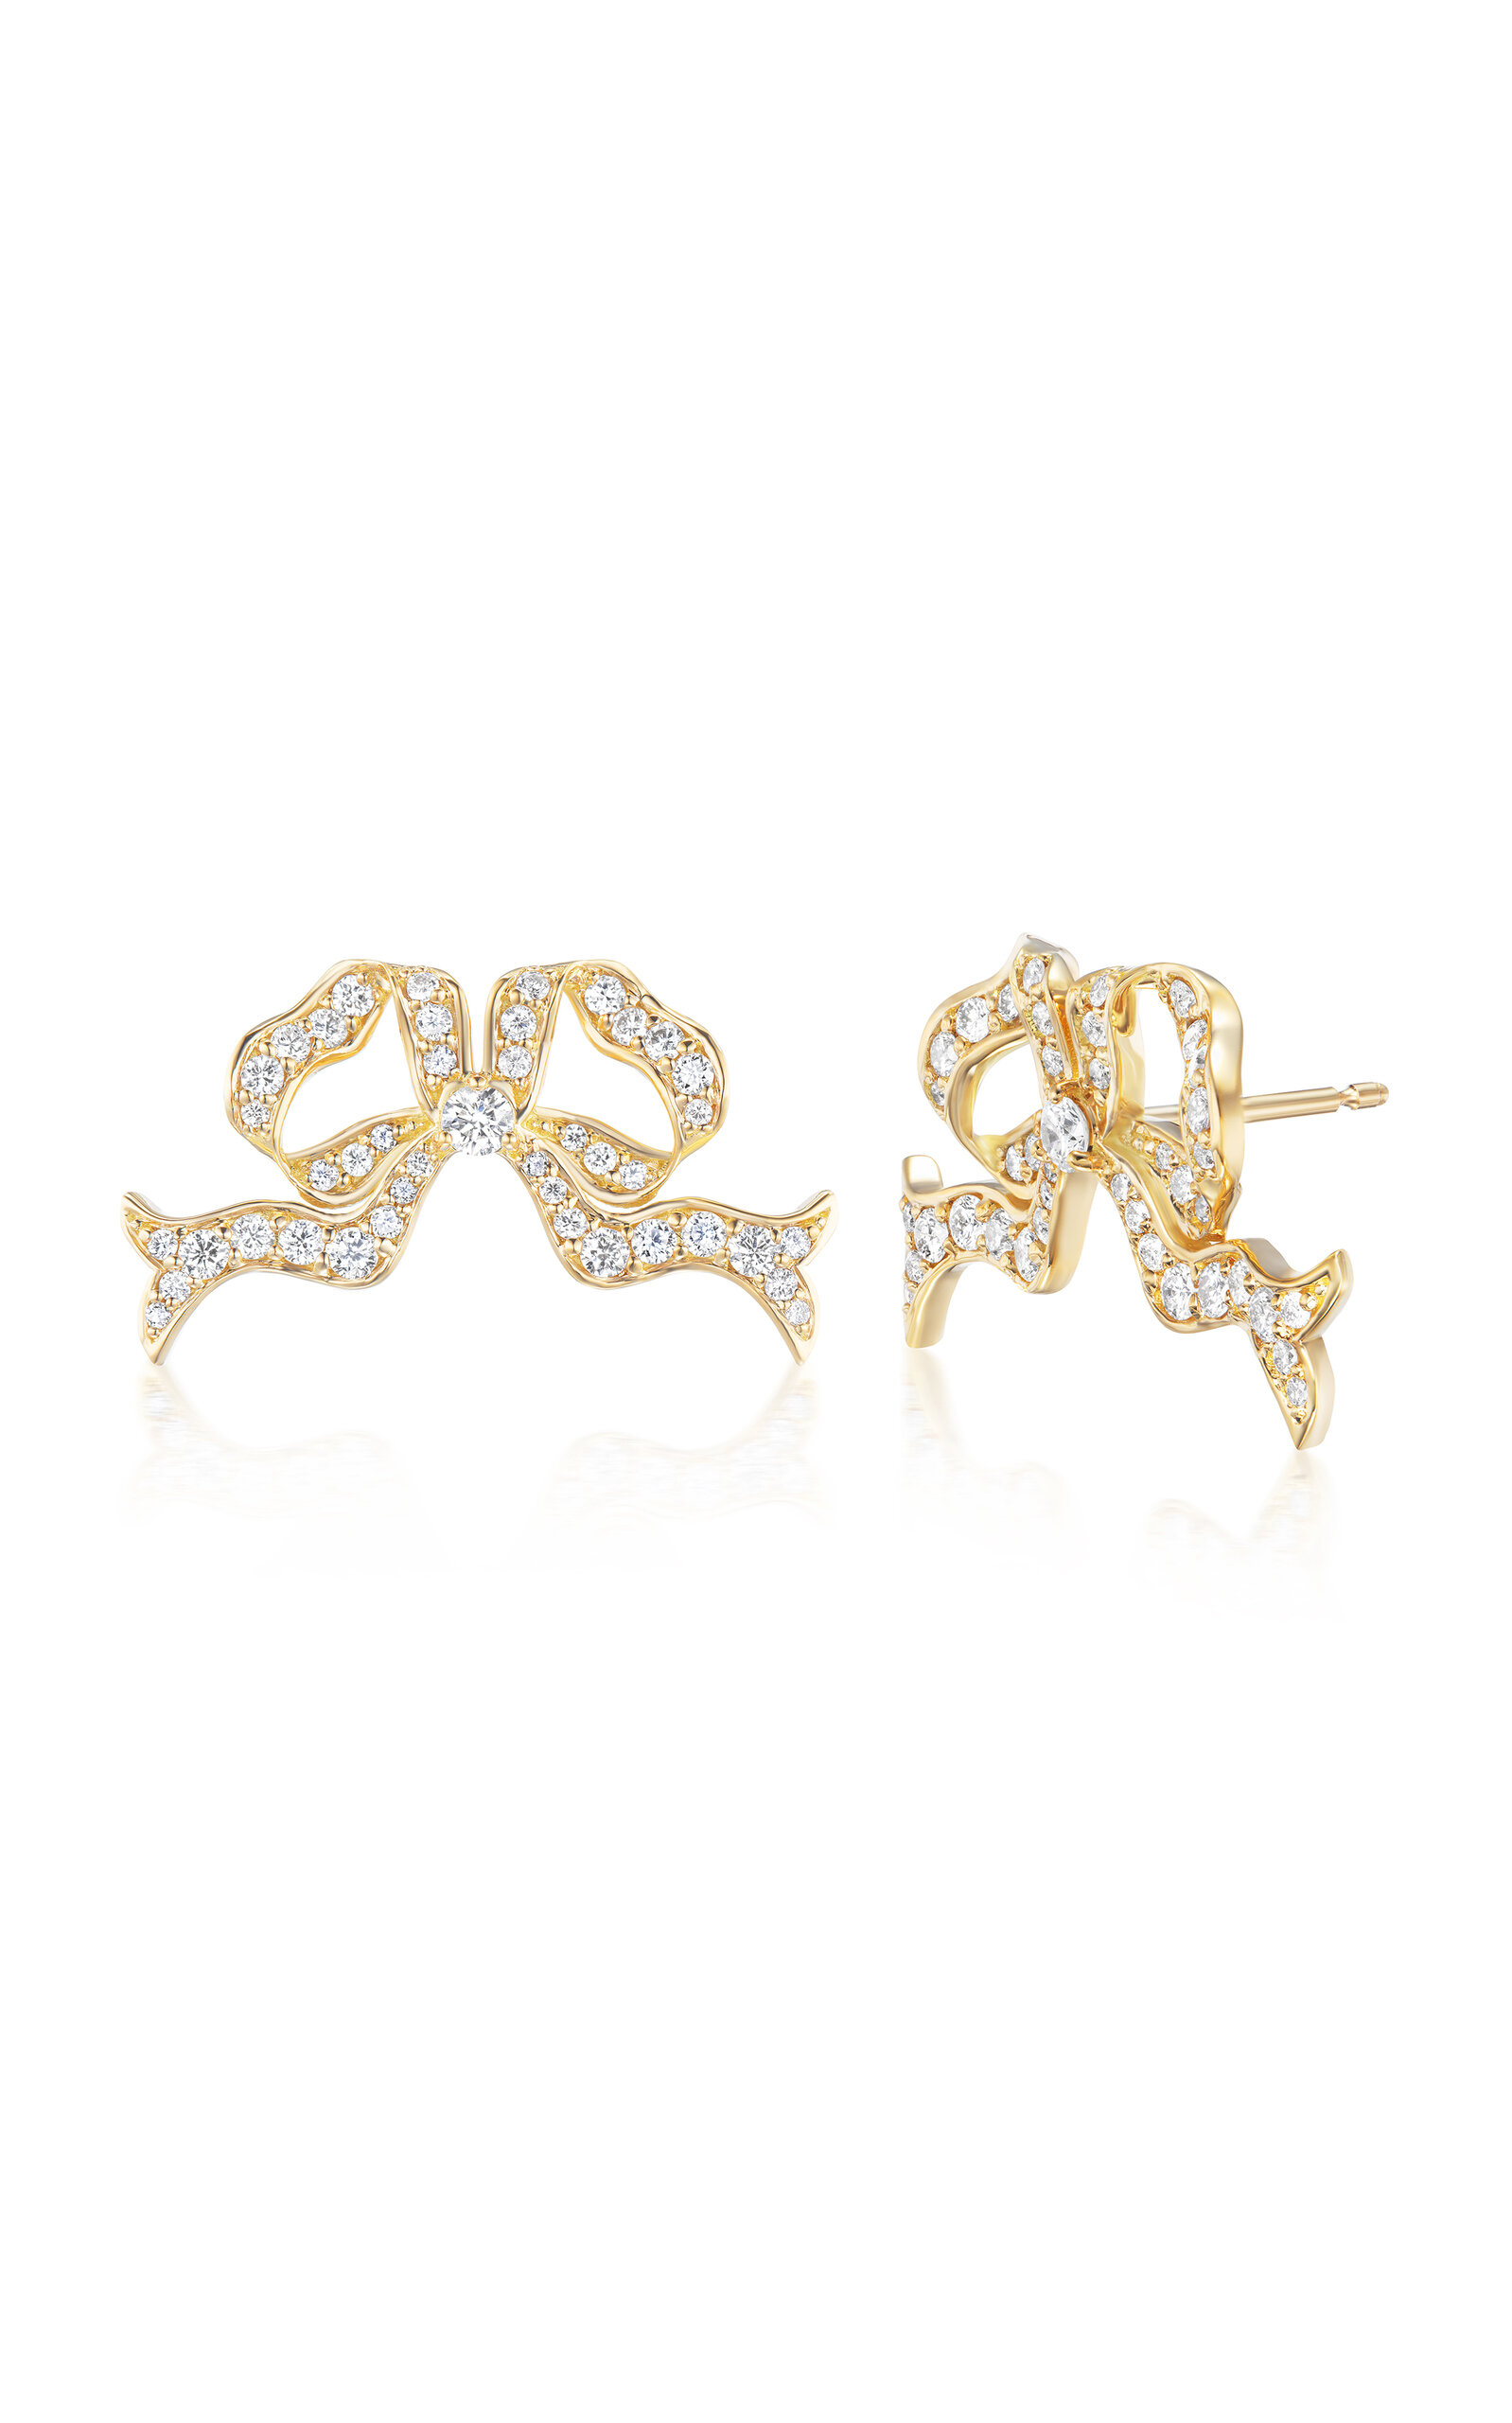 18K Yellow Gold Diamond Pavè Bow Earrings